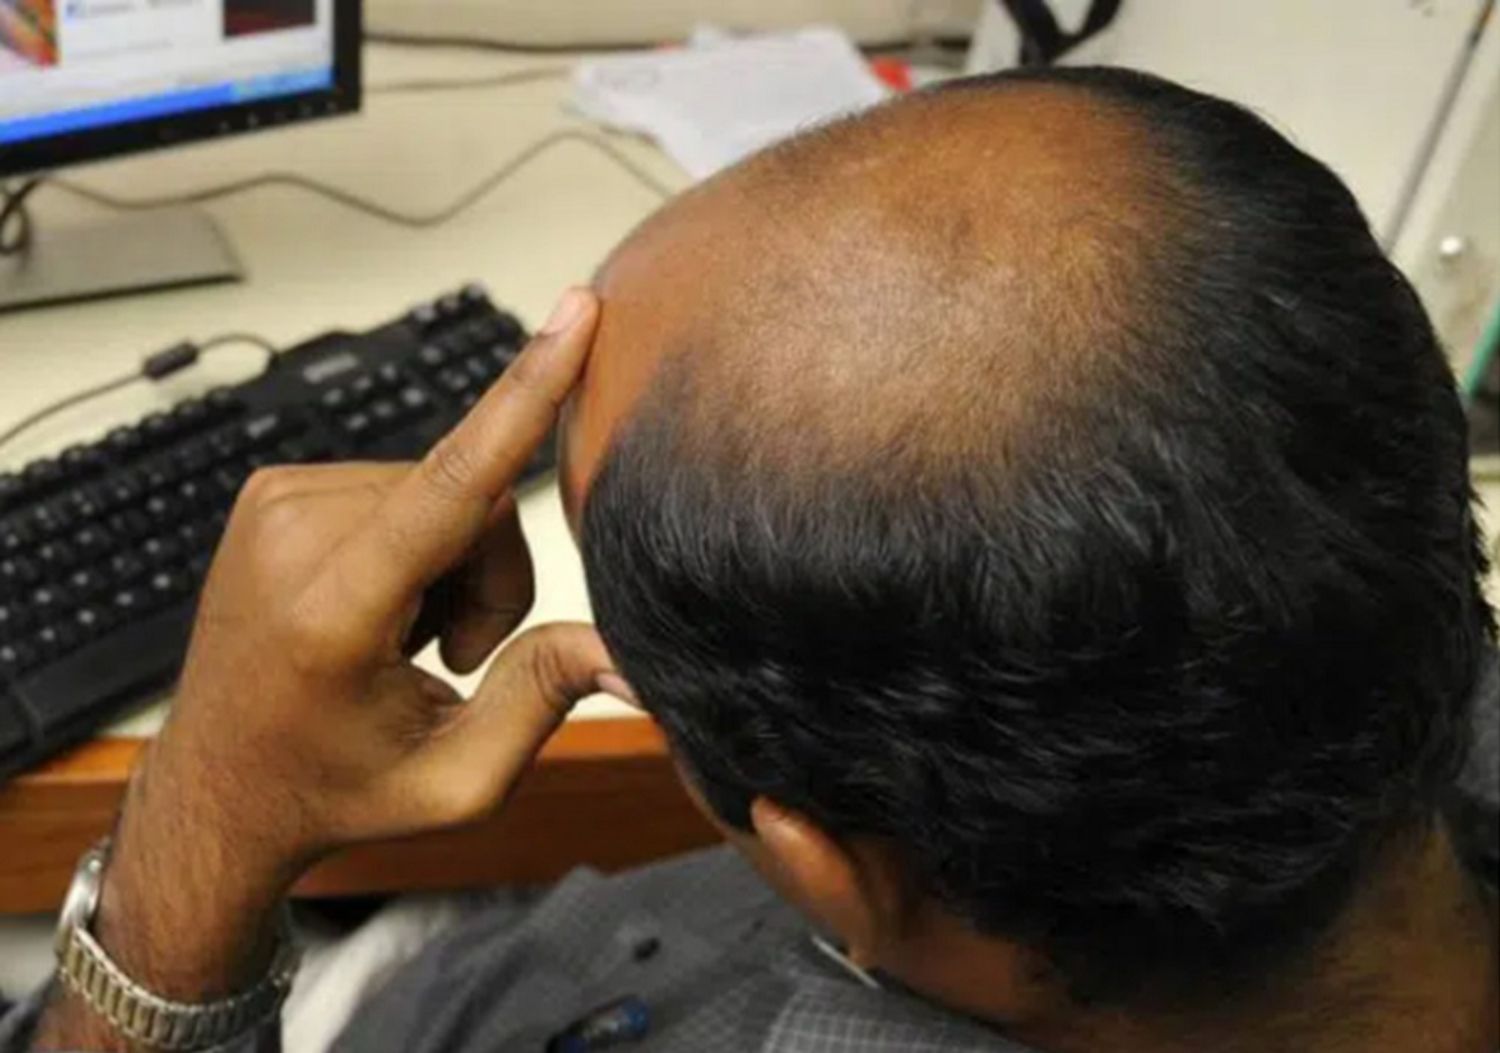 Không ngờ đầu hói lại là điểm trừ cực lớn của đàn ông trong mắt phụ nữ Ấn Độ (Ảnh minh họa)